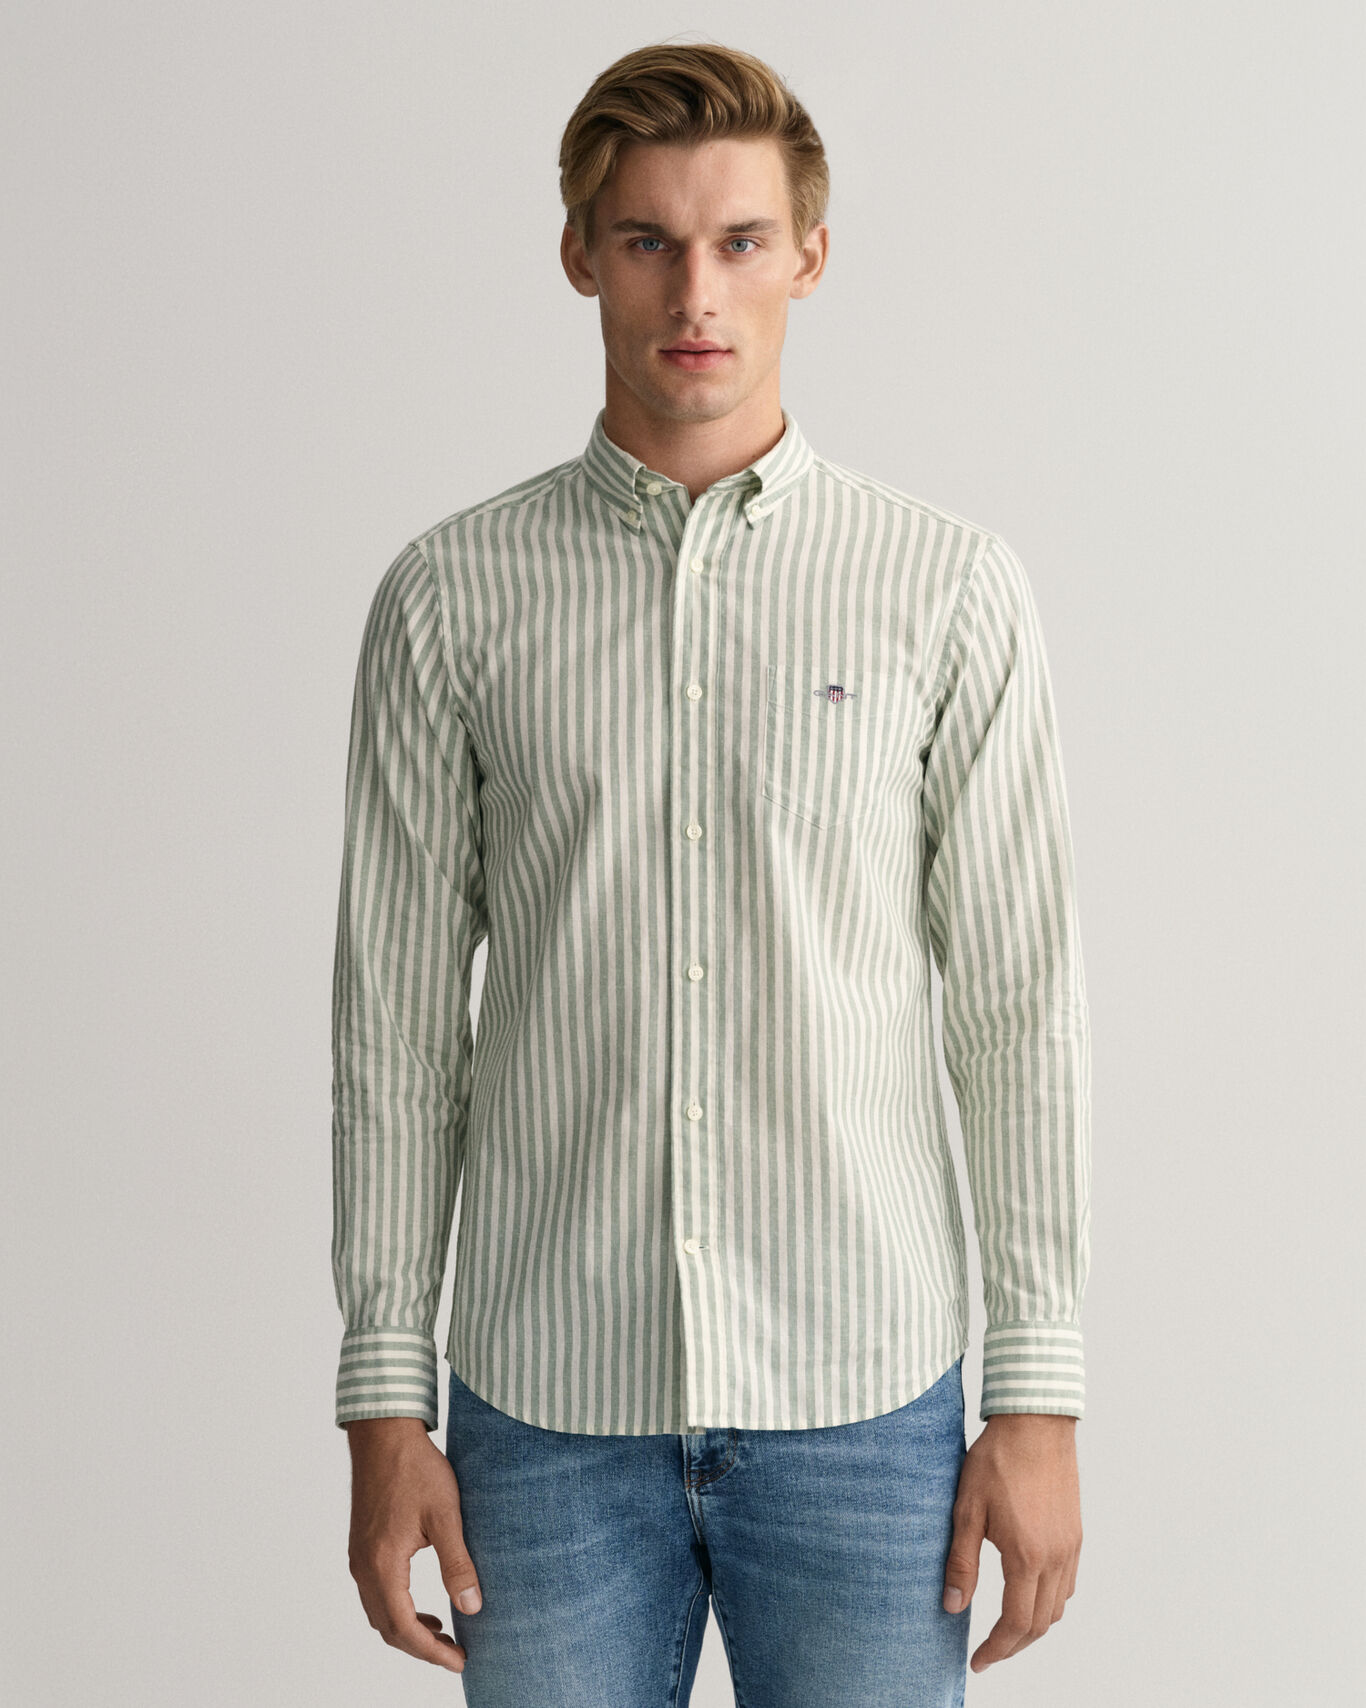 Reg cotton linnen stripe shirt